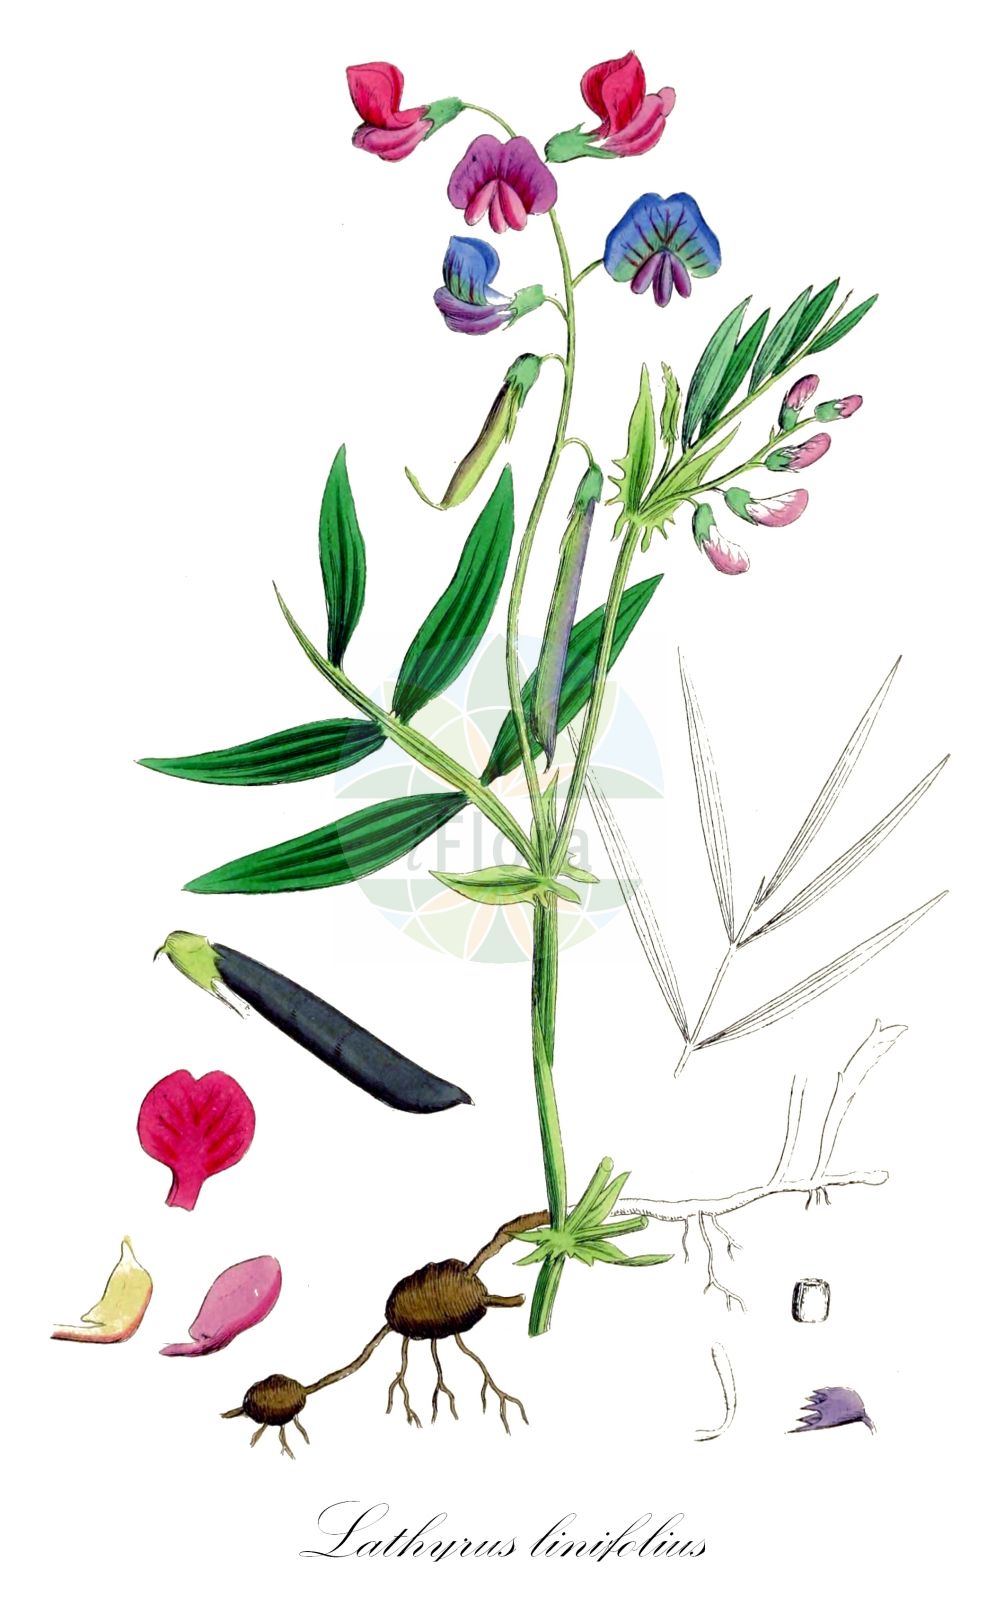 Historische Abbildung von Lathyrus linifolius (Berg-Platterbse - Bitter-vetch). Das Bild zeigt Blatt, Bluete, Frucht und Same. ---- Historical Drawing of Lathyrus linifolius (Berg-Platterbse - Bitter-vetch). The image is showing leaf, flower, fruit and seed.(Lathyrus linifolius,Berg-Platterbse,Bitter-vetch,Lathyrus linifolius,Lathyrus macrorrhizus,Lathyrus montanus,Orobus linifolius,Orobus tuberosus,Berg-Platterbse,Bitter-vetch,Tuberous Bitter Vetch,Bitter Vetchling,Wood Pea,Lathyrus,Platterbse,Pea,Fabaceae,Schmetterlingsblütler,Pea family,Blatt,Bluete,Frucht,Same,leaf,flower,fruit,seed,Sowerby (1790-1813))